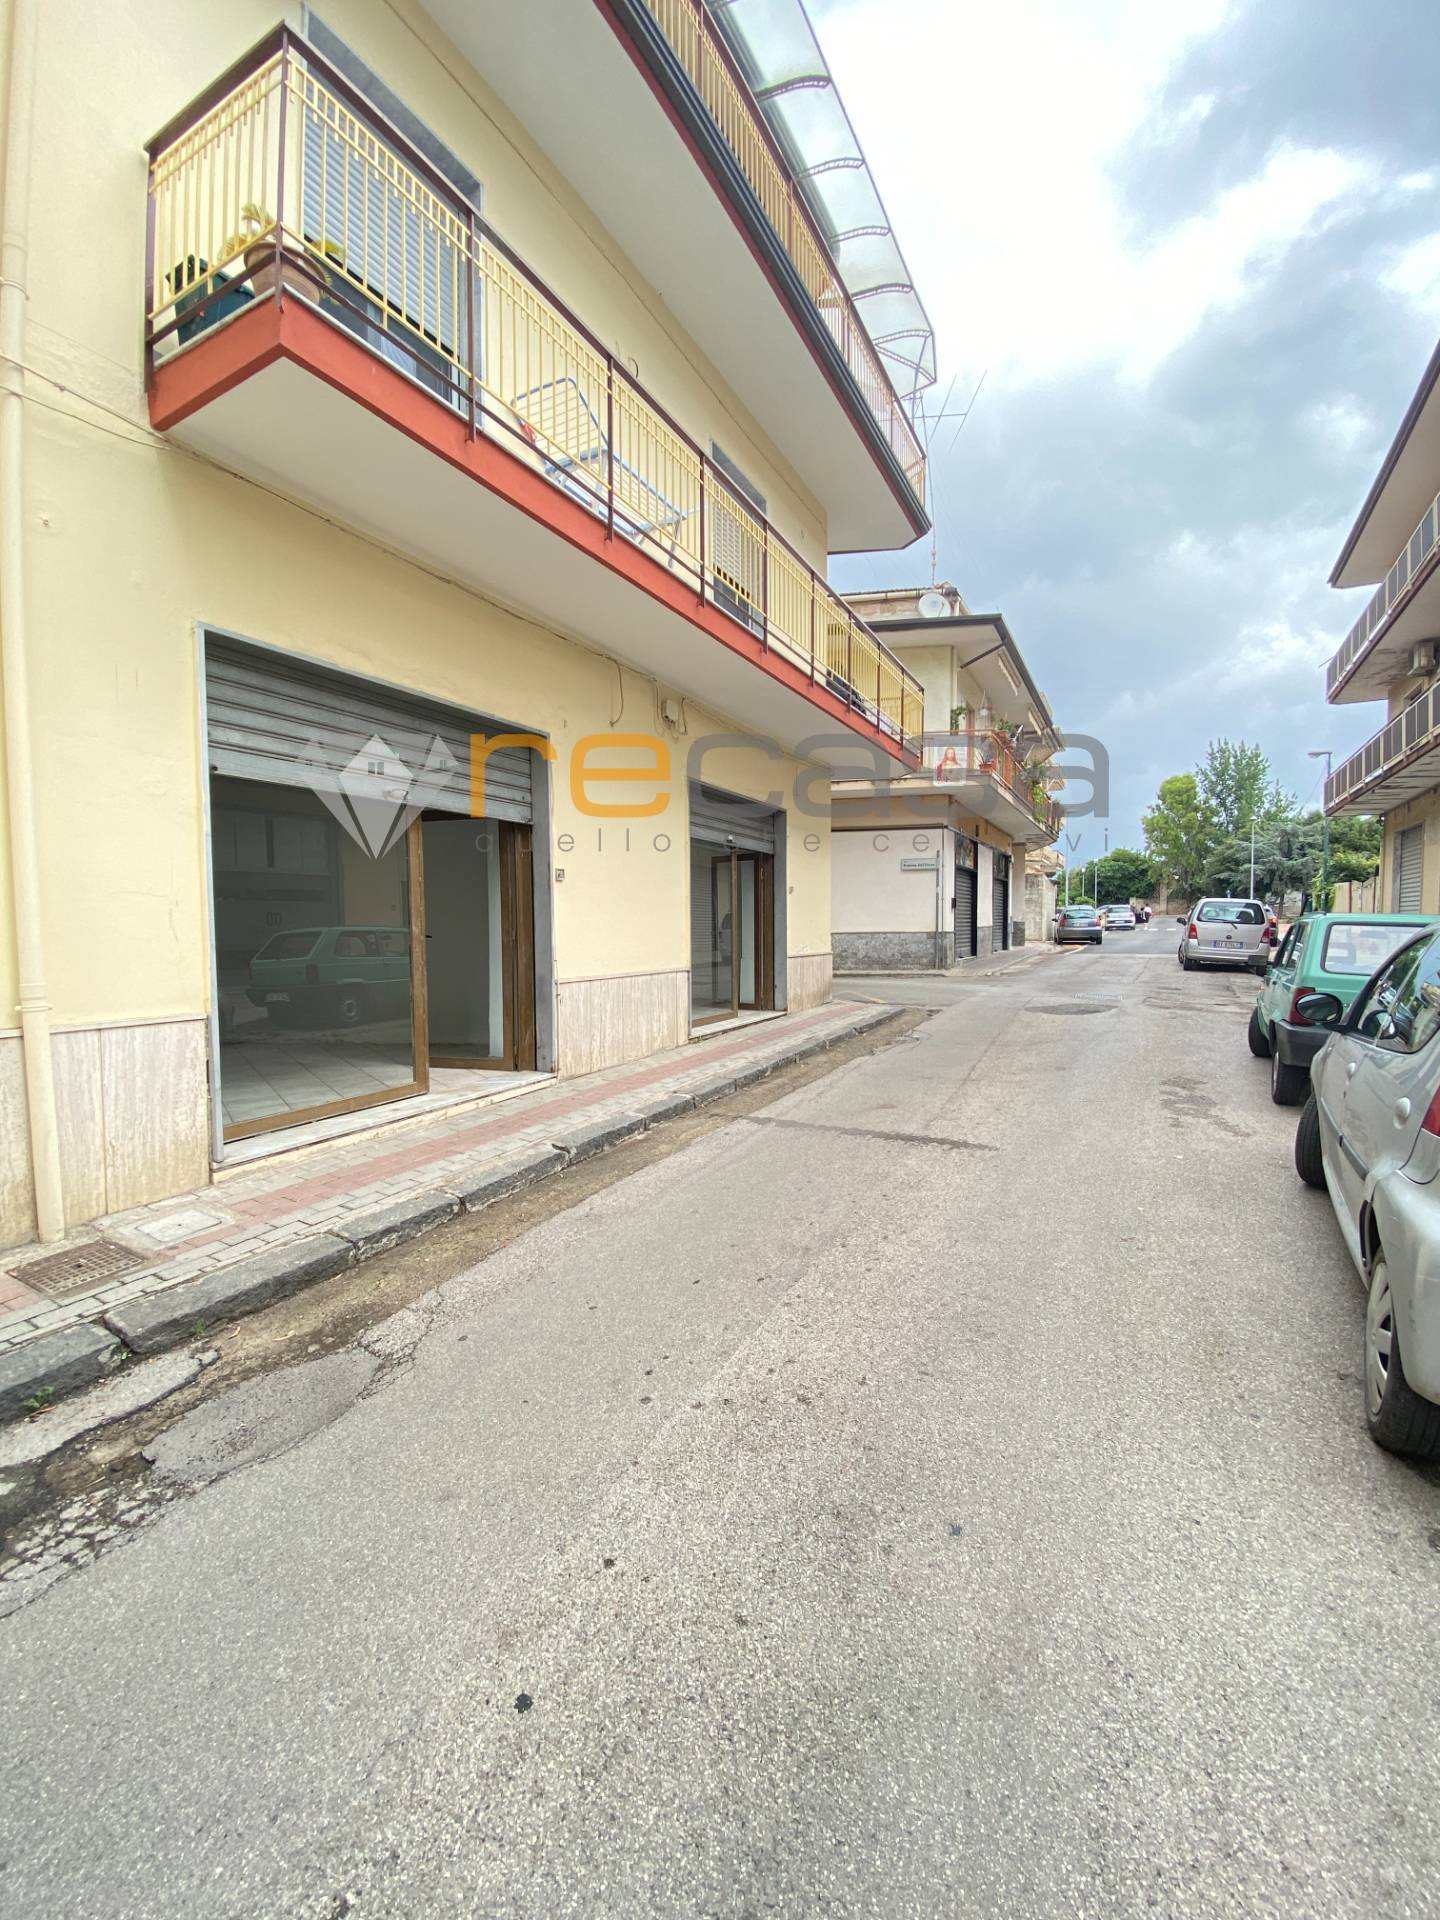 Locale commerciale/Negozio in Affitto a Salerno